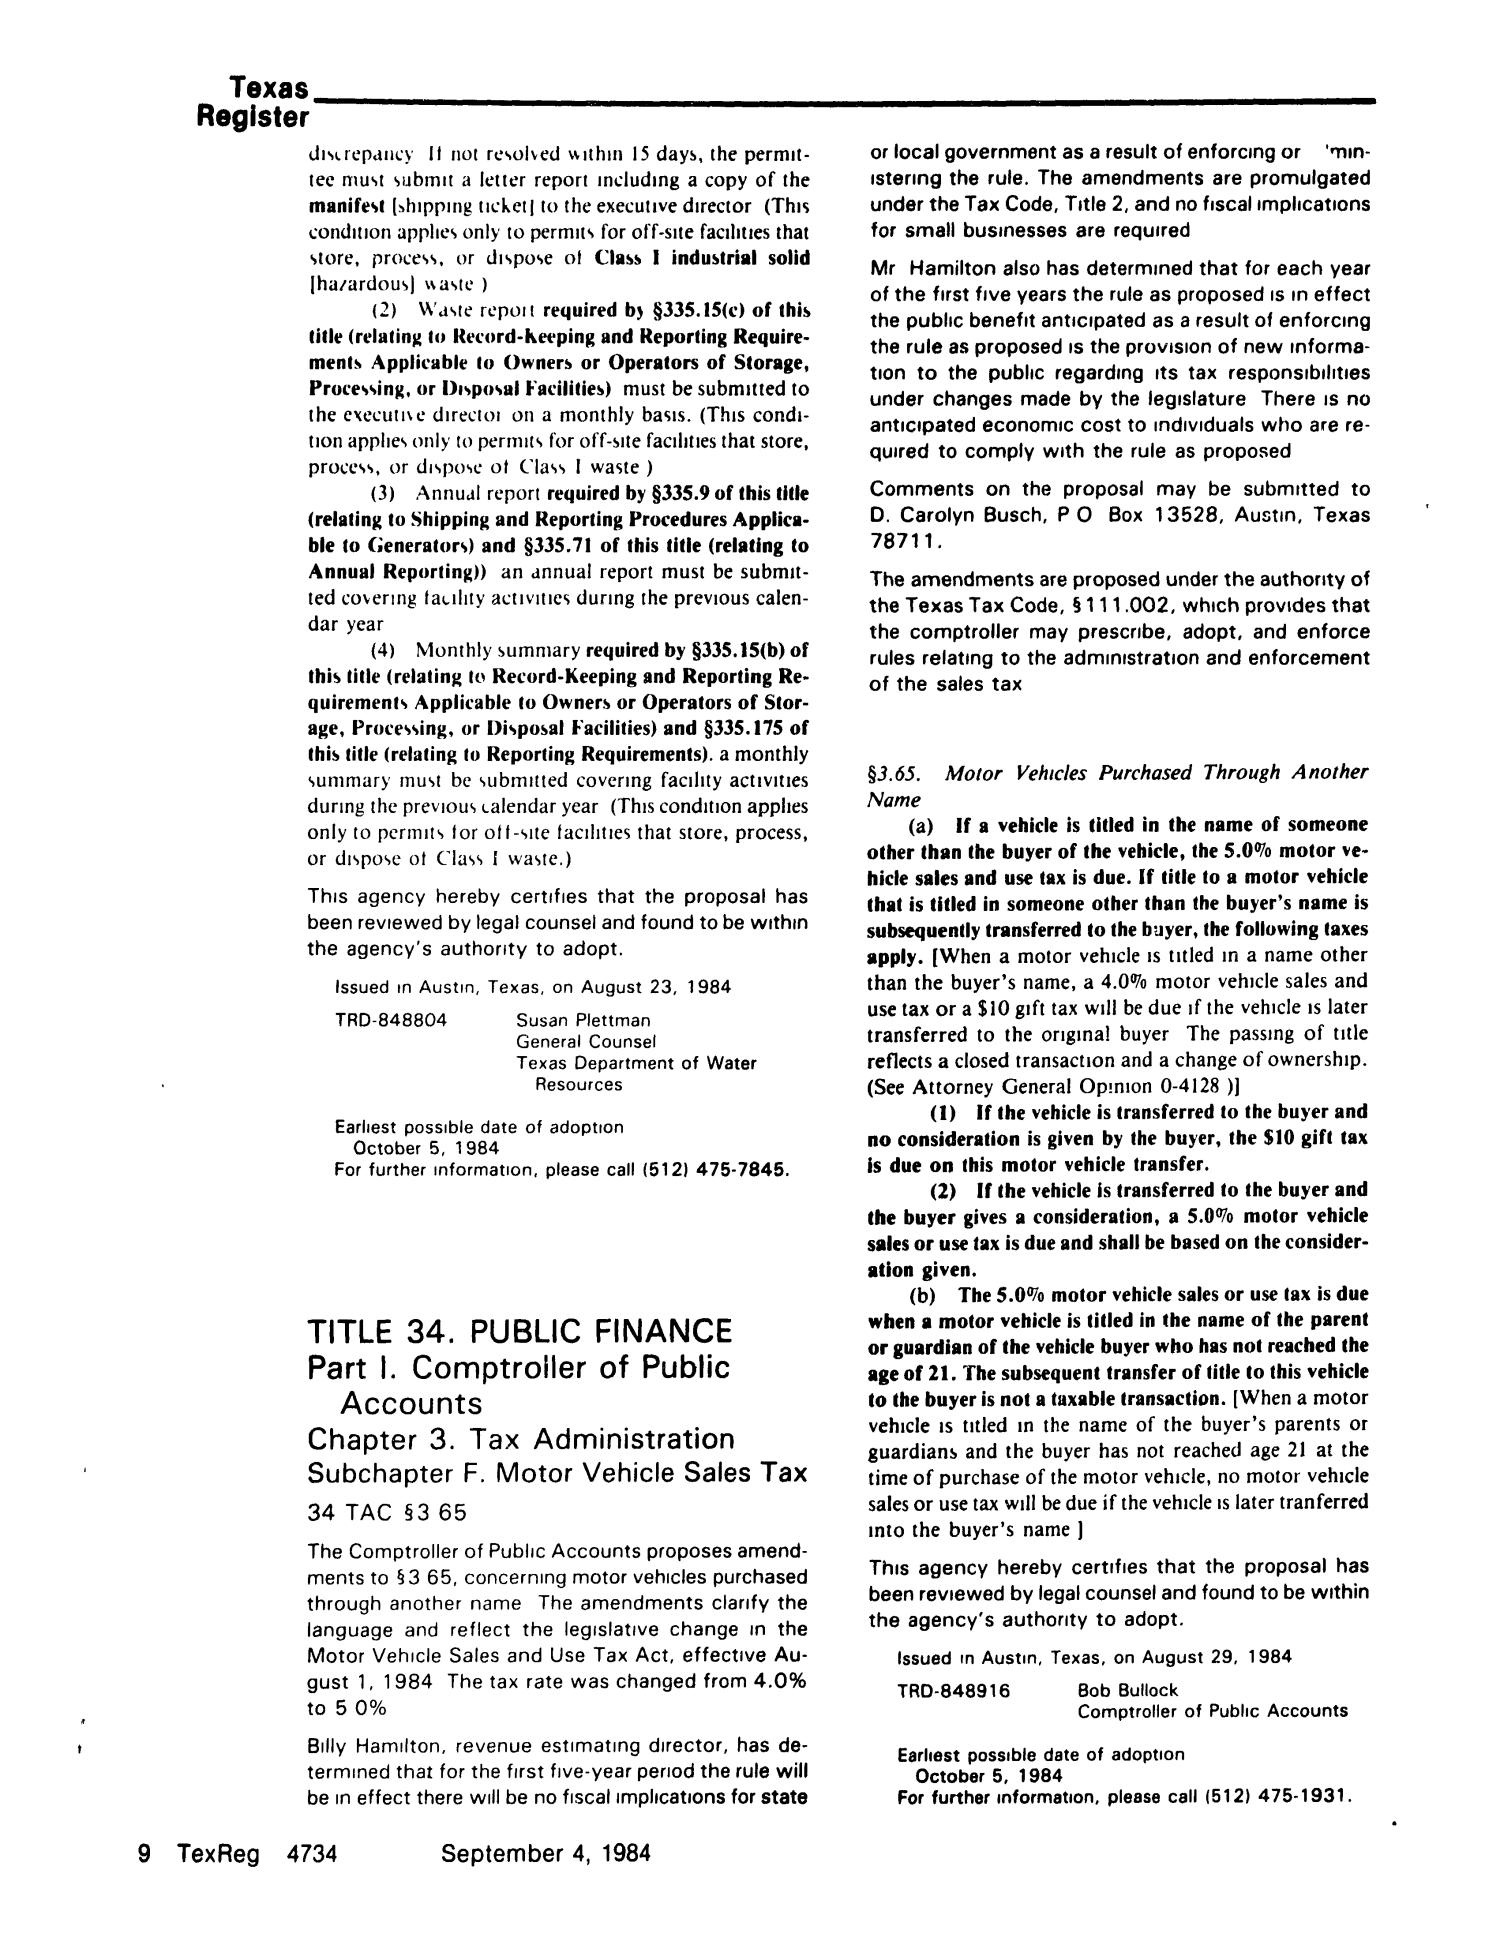 Texas Register, Volume 9, Number 66, Pages 4703-4756, September 4, 1984
                                                
                                                    4734
                                                